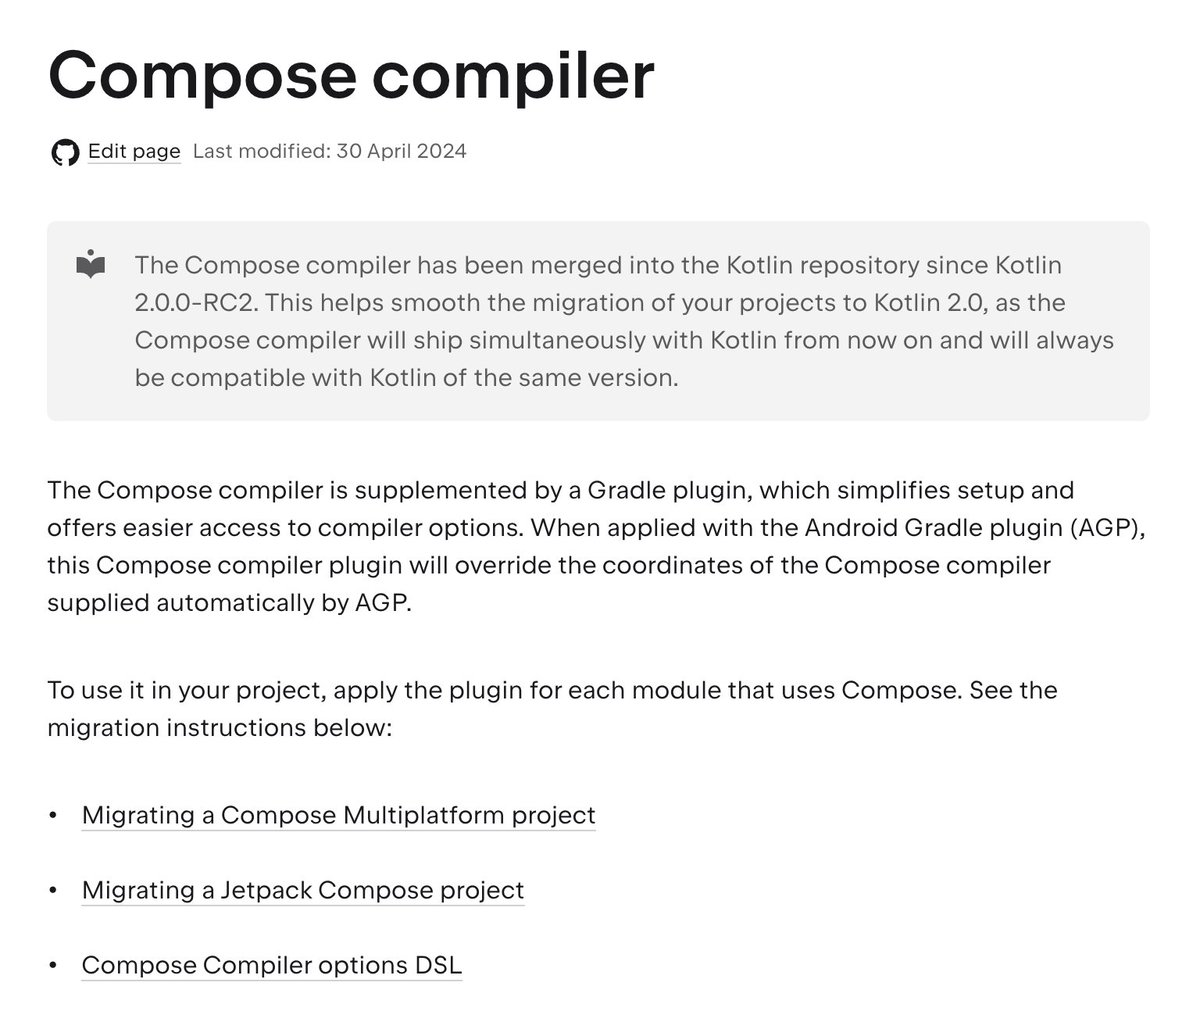 Migrating a Compose Multiplatform and Jetpack Compose project
(jetbrains.com/help/kotlin-mu…)

Instructions for migrating Compose Multiplatform and and Jetpack Compose projects to Kotlin 2.0 and the new Compose compiler Gradle plugin.